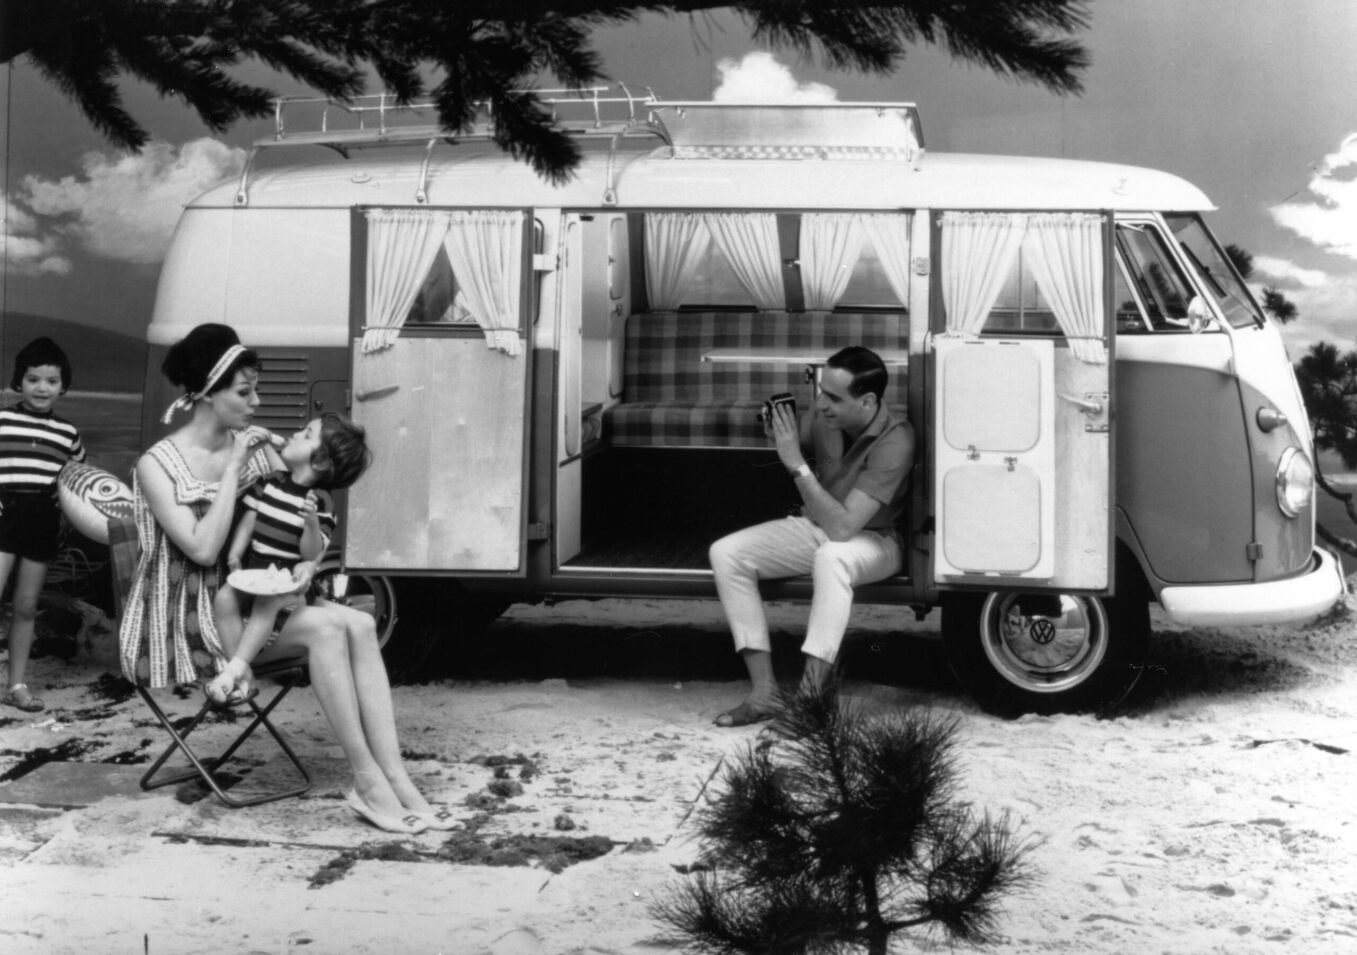 Slik så den første Volkswagen campingbilen ut